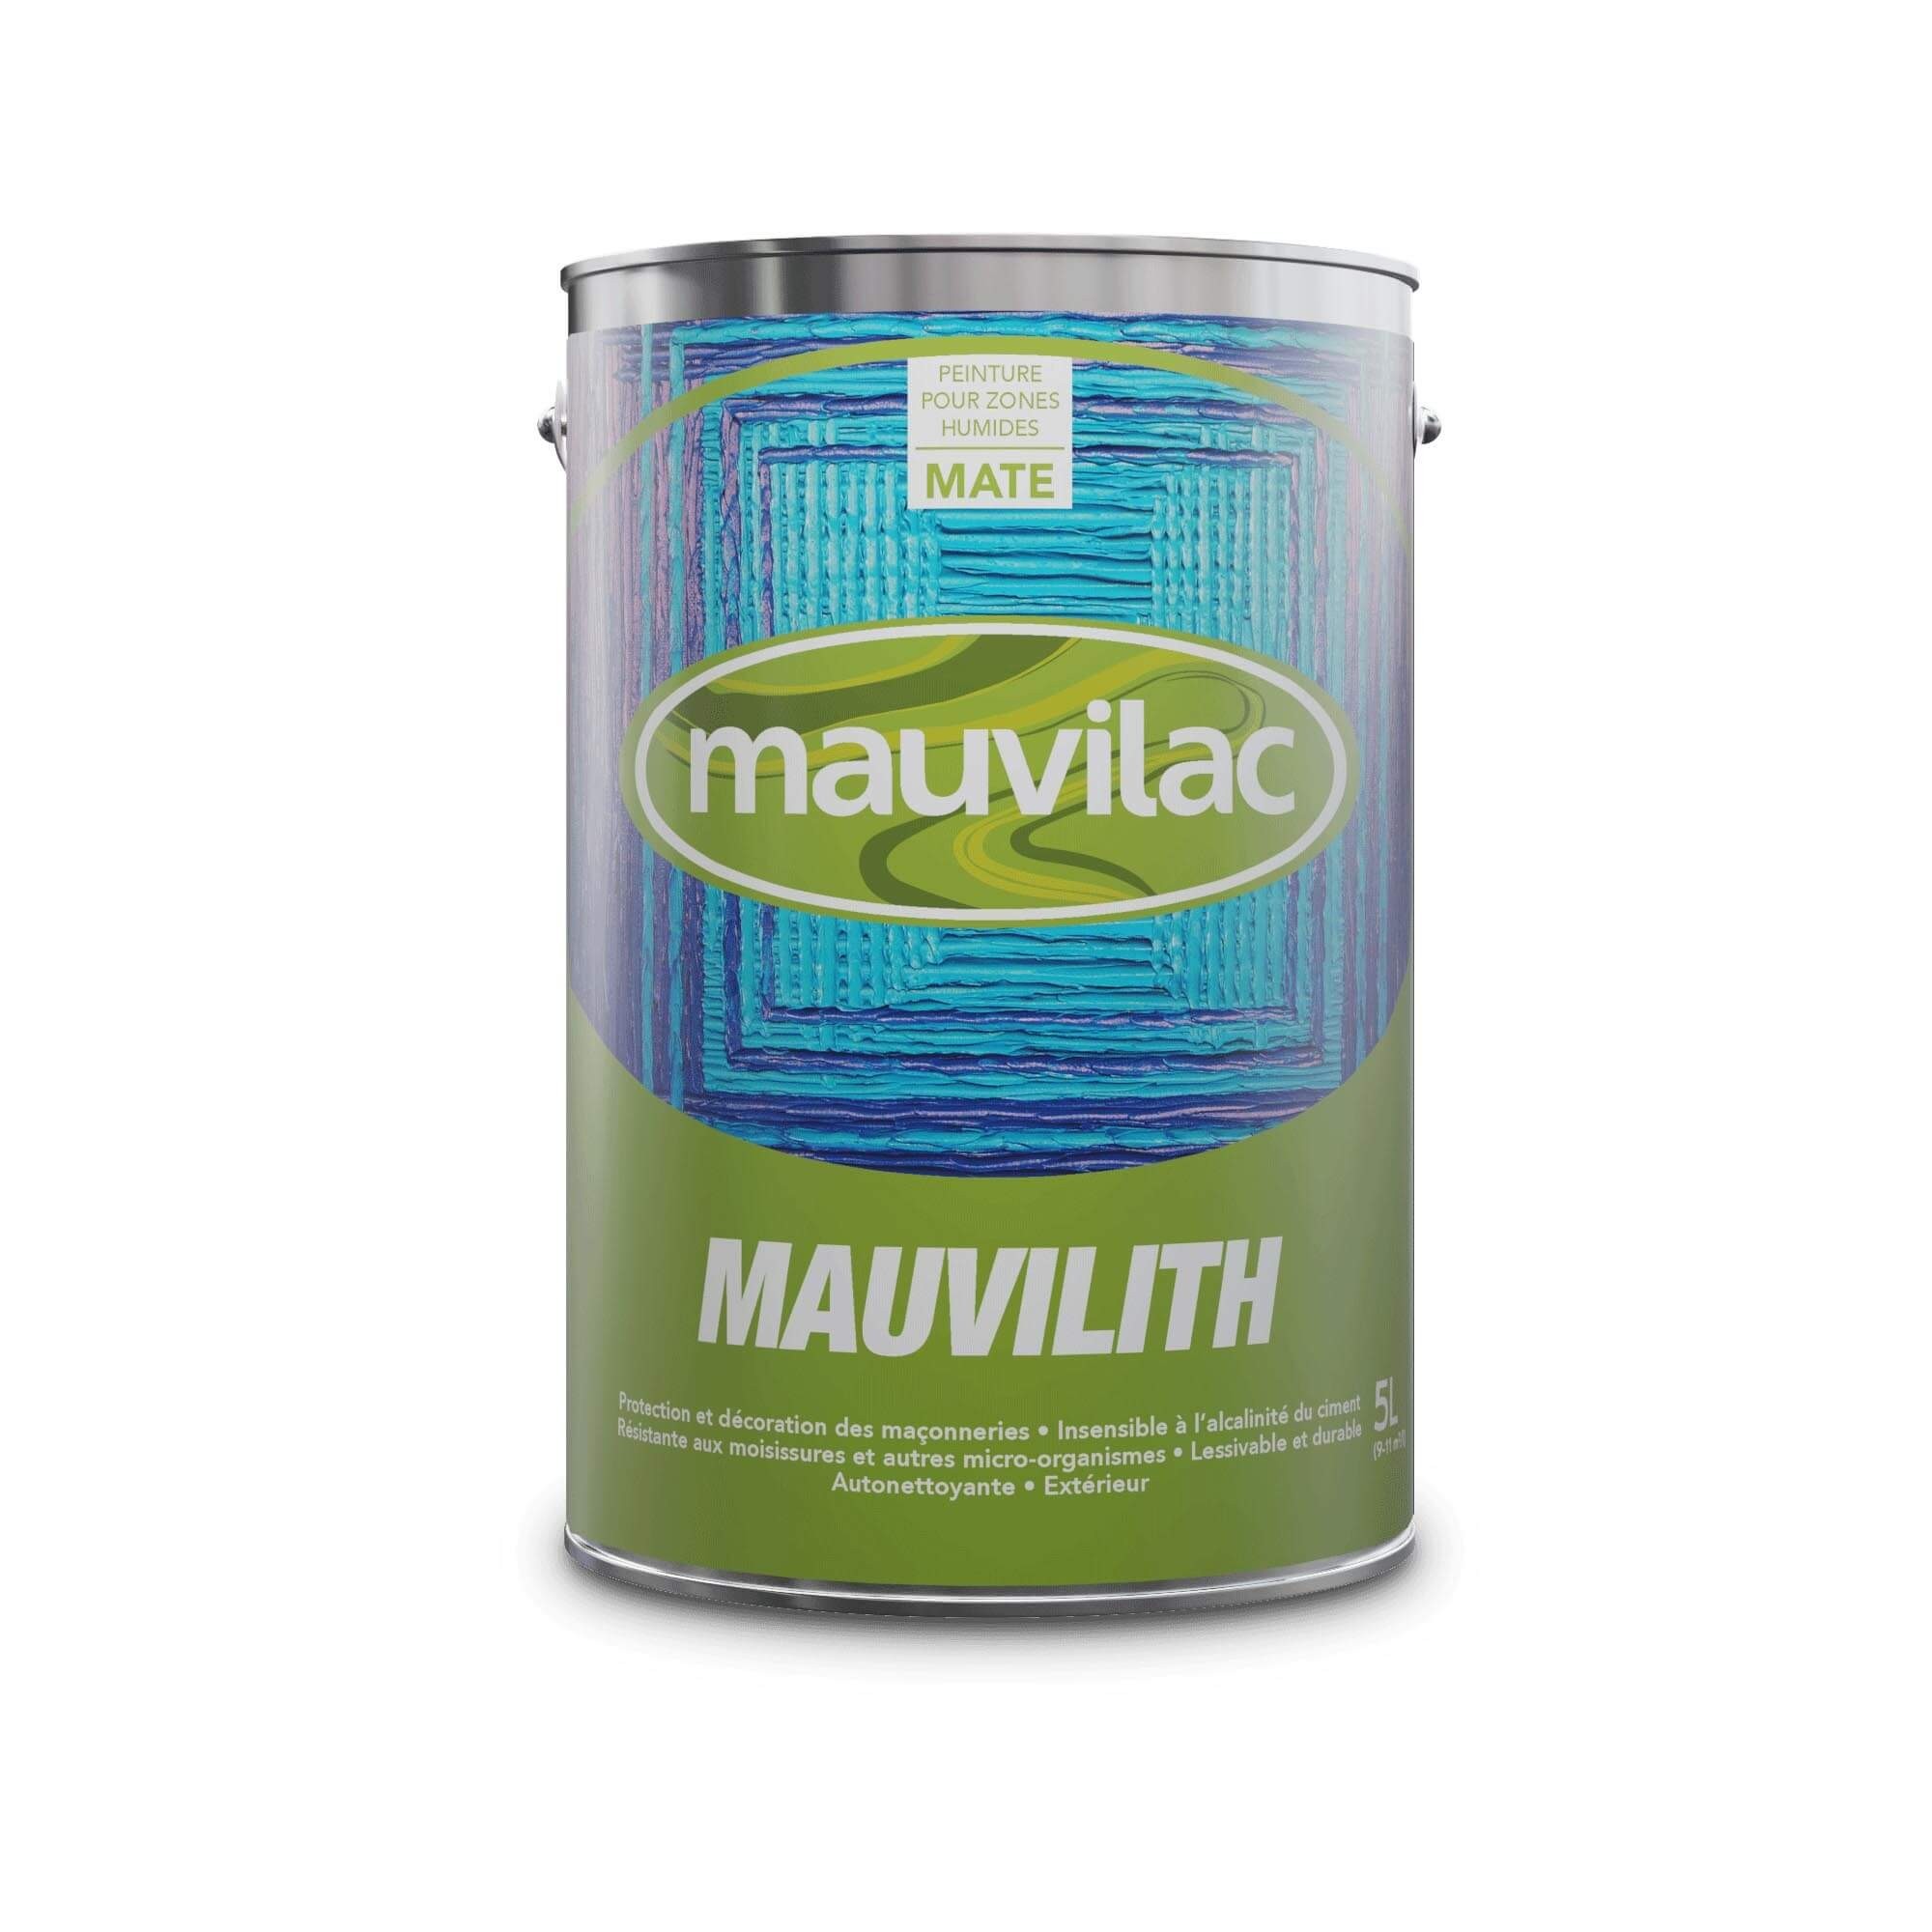 Mauvilac Mauvilith Paint White